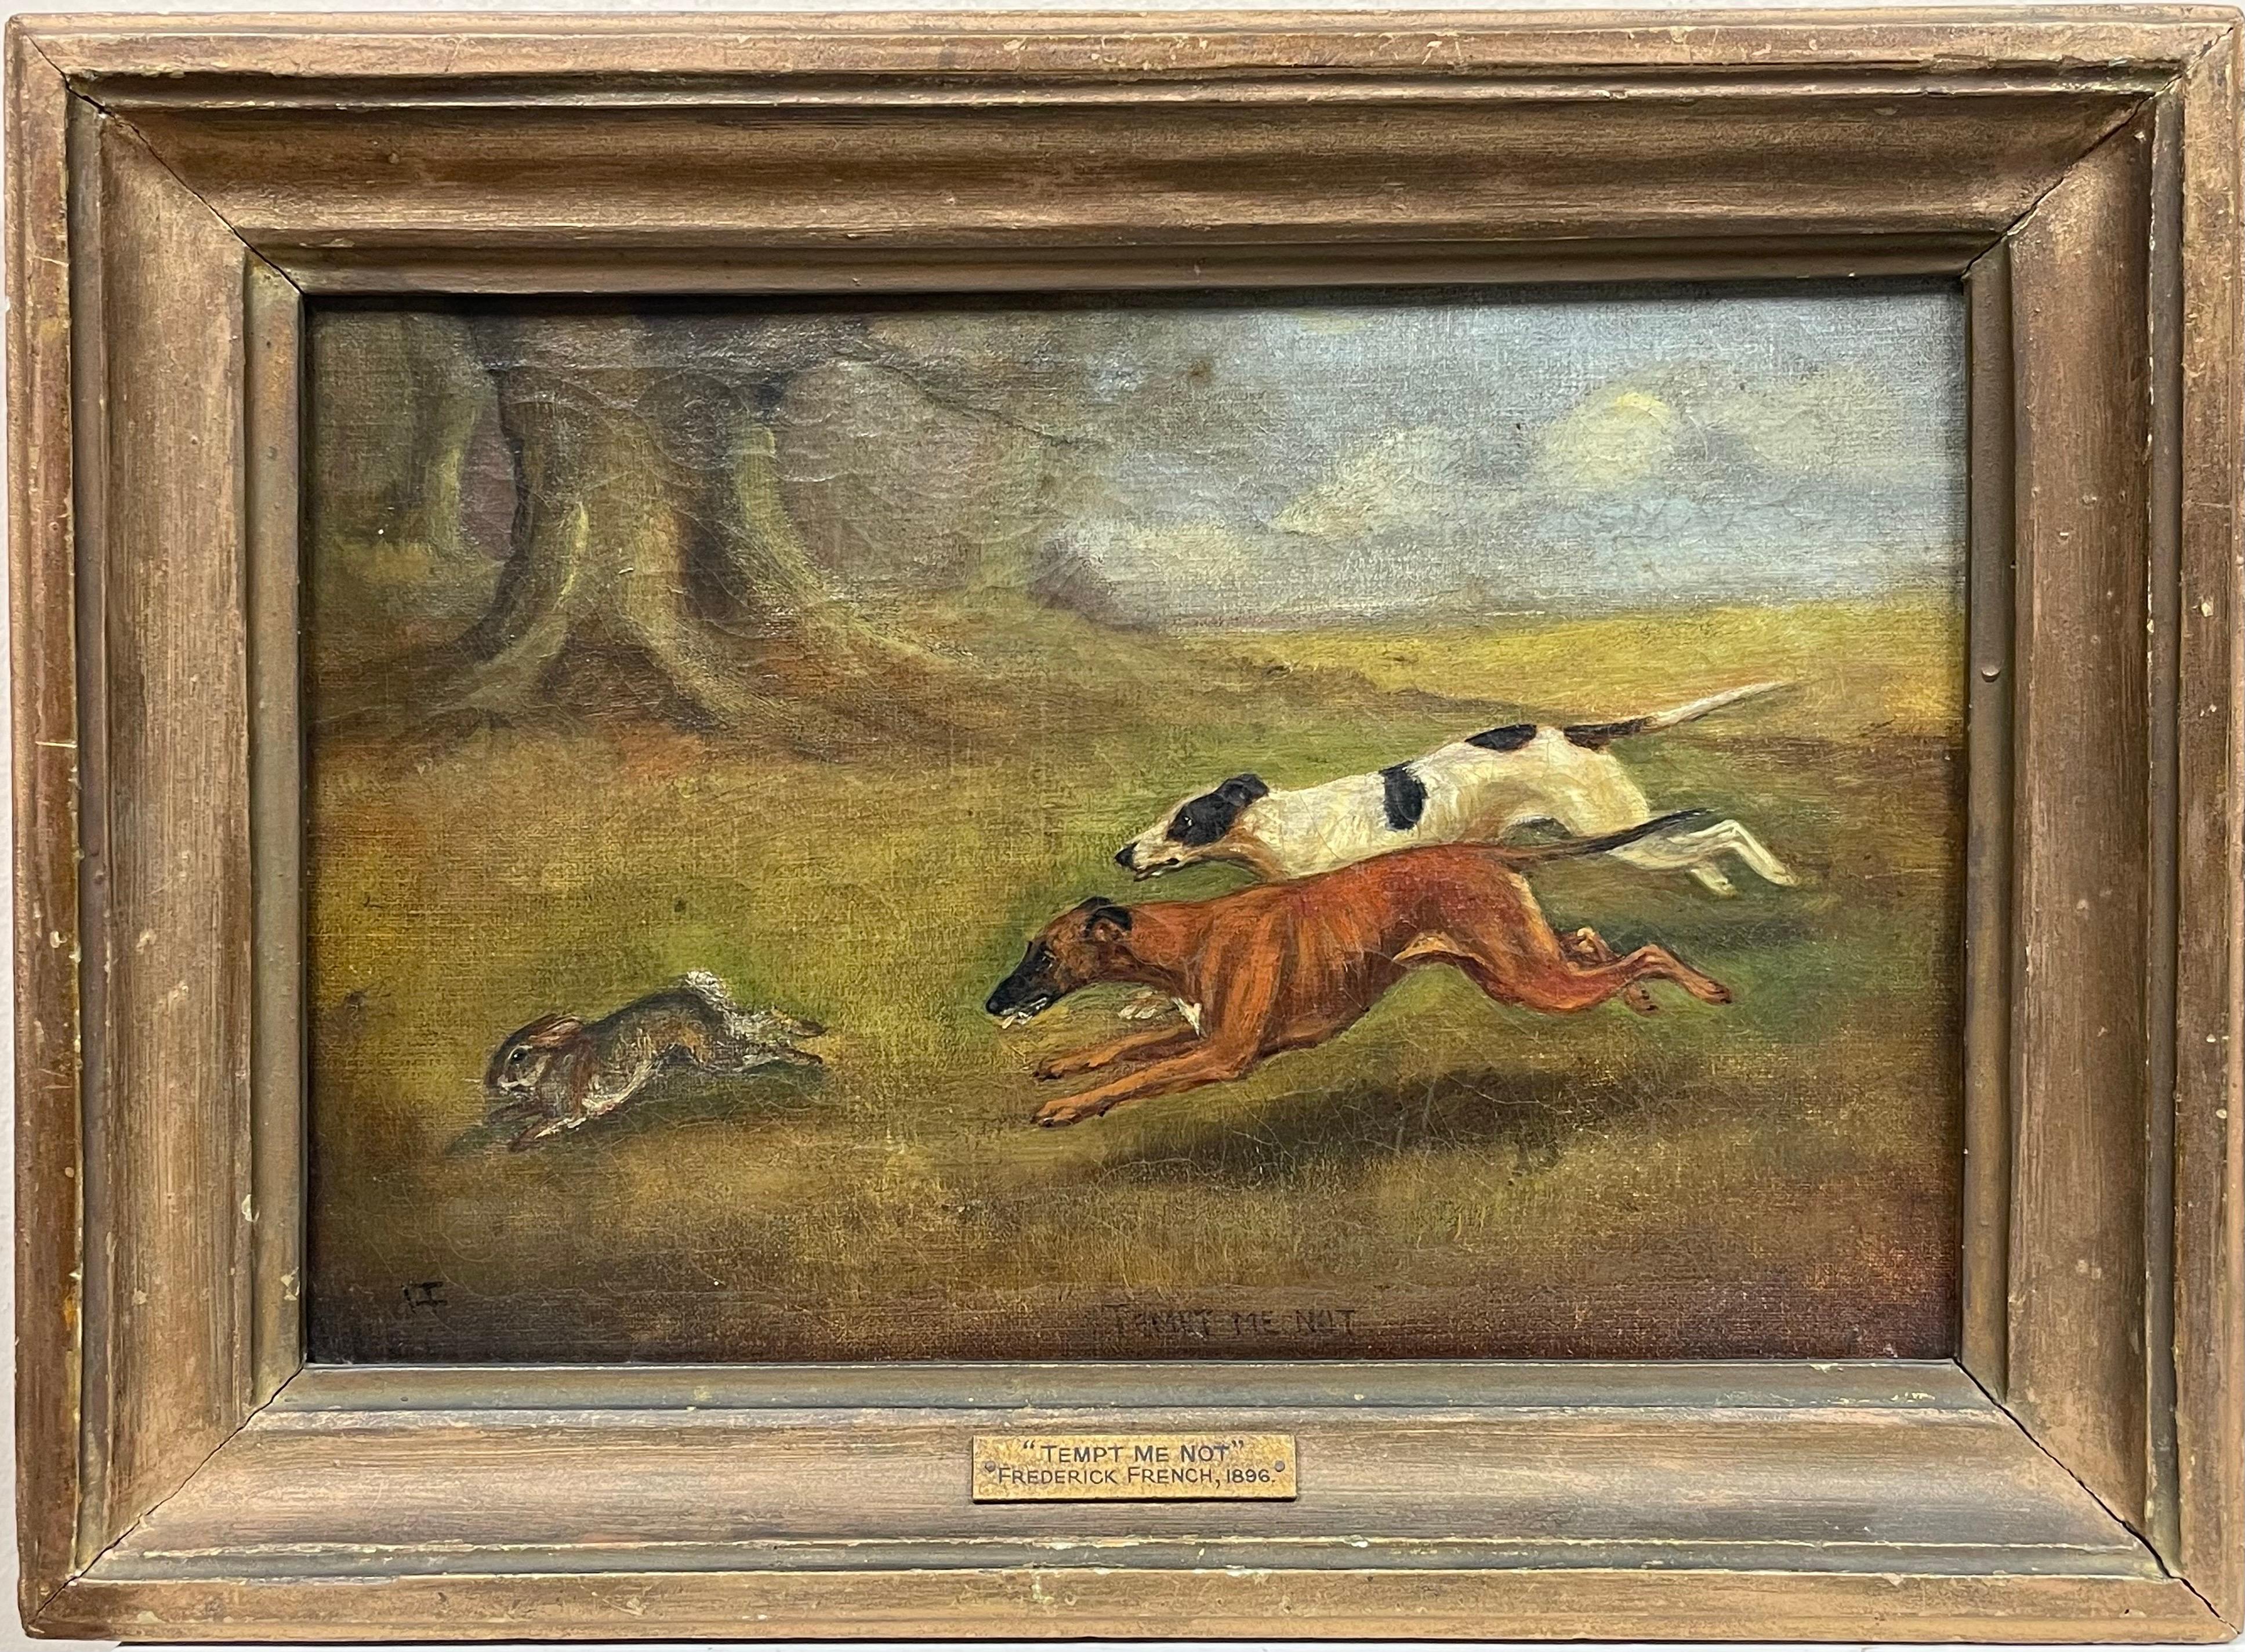 Animal Painting Frederick French - Fine peinture britannique du 19ème siècle représentant des chiens qui chassent des lapins, signée et datée de 1896